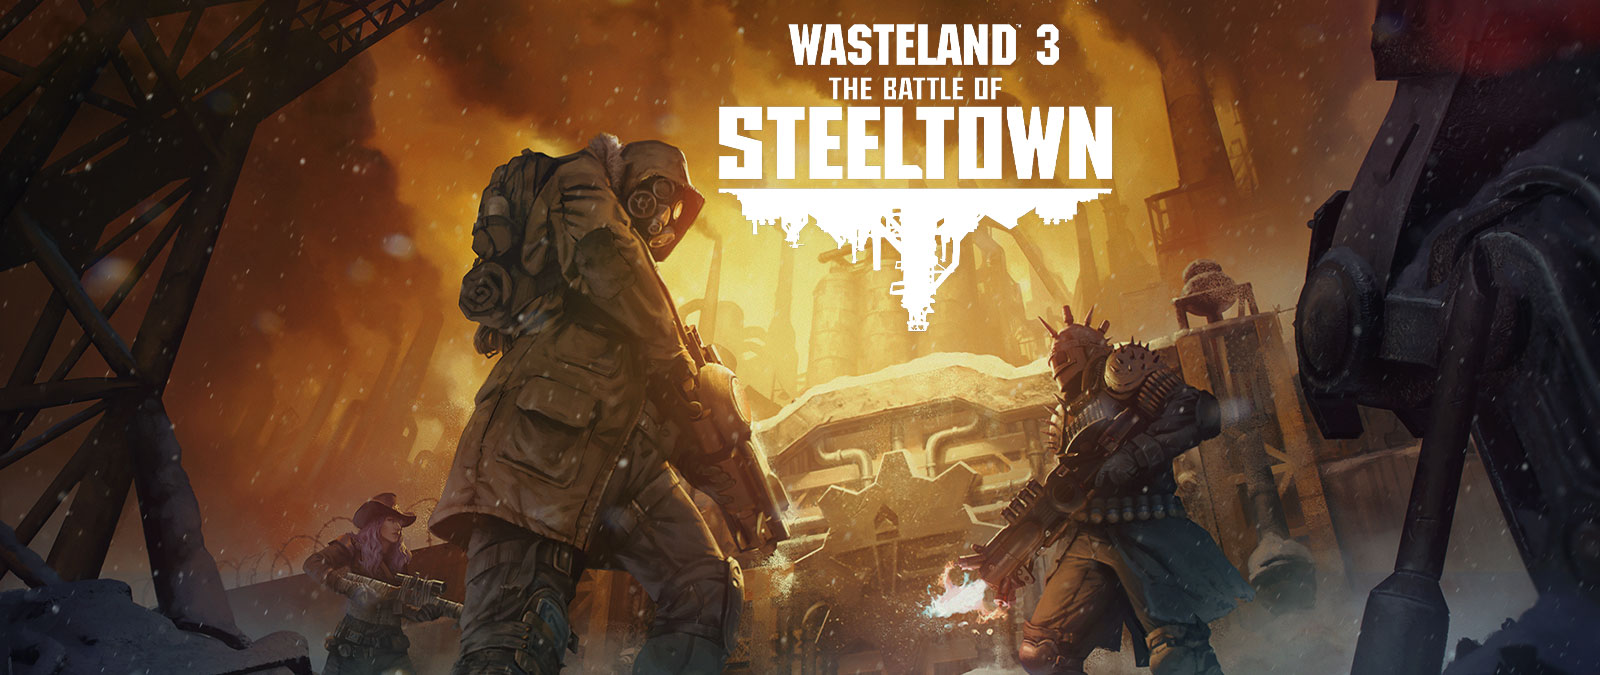 Wasteland 3: The Battle of Steeltown. Tre karakterer med våpen og rustning foran en dør med en industriell bakgrunn